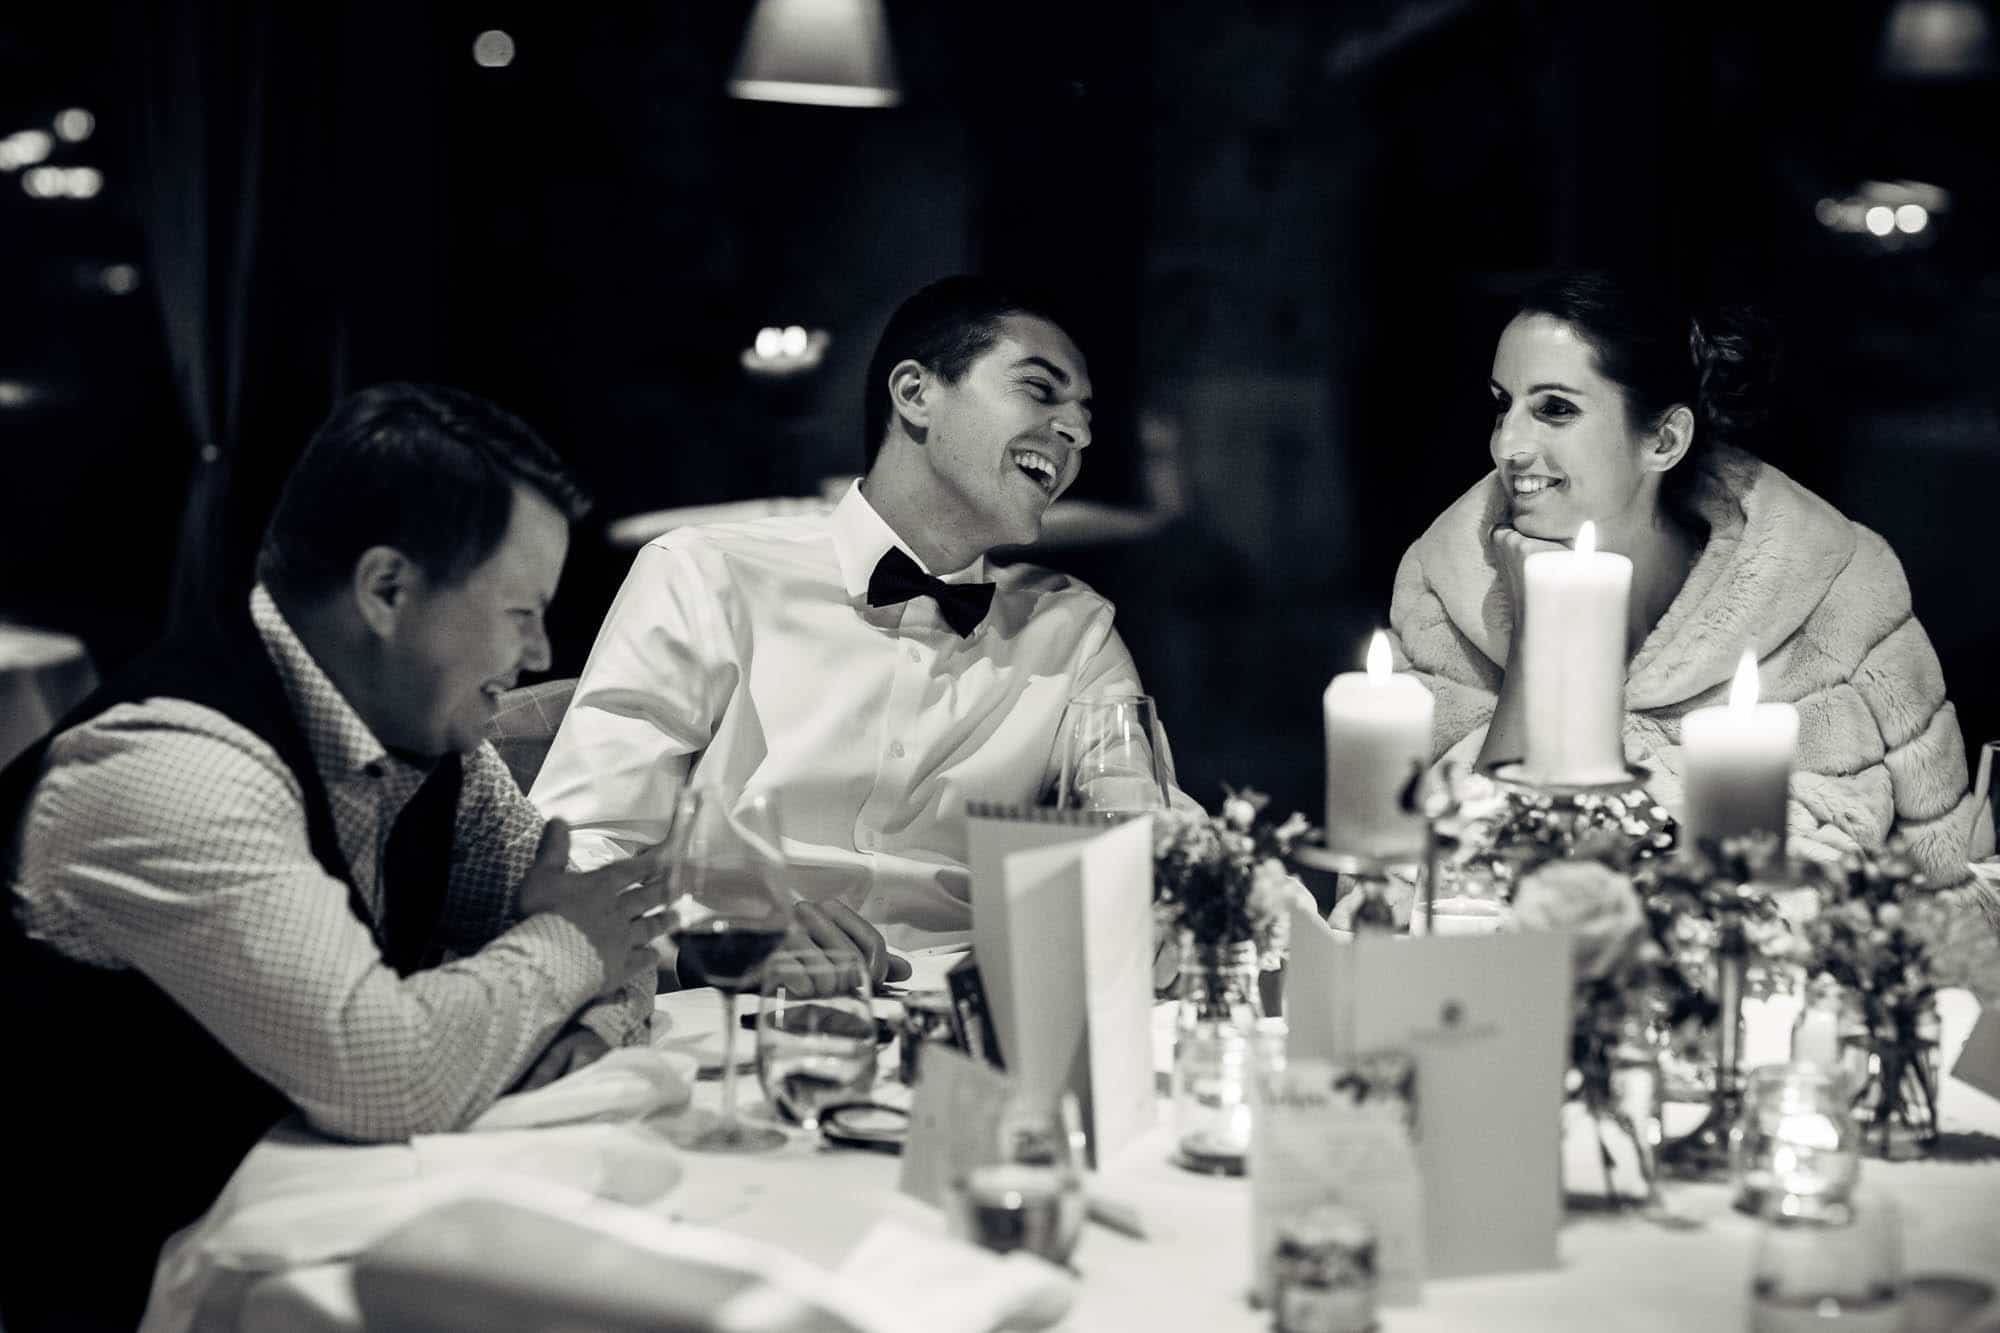 Gäste lachen während Hochzeitsspiel